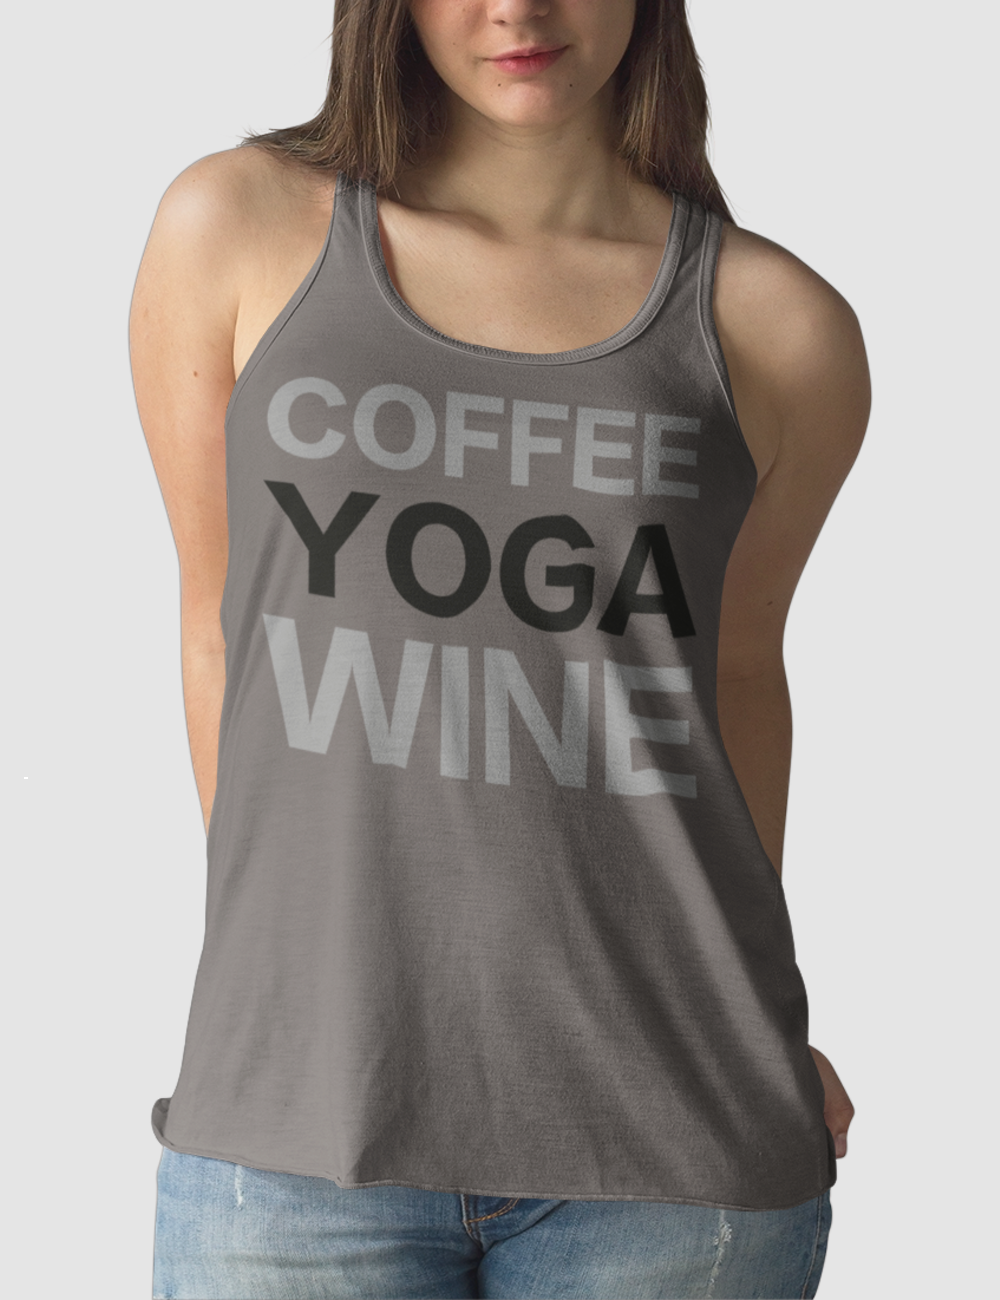 Coffee Yoga Wine | Women's Cut Racerback Tank Top OniTakai